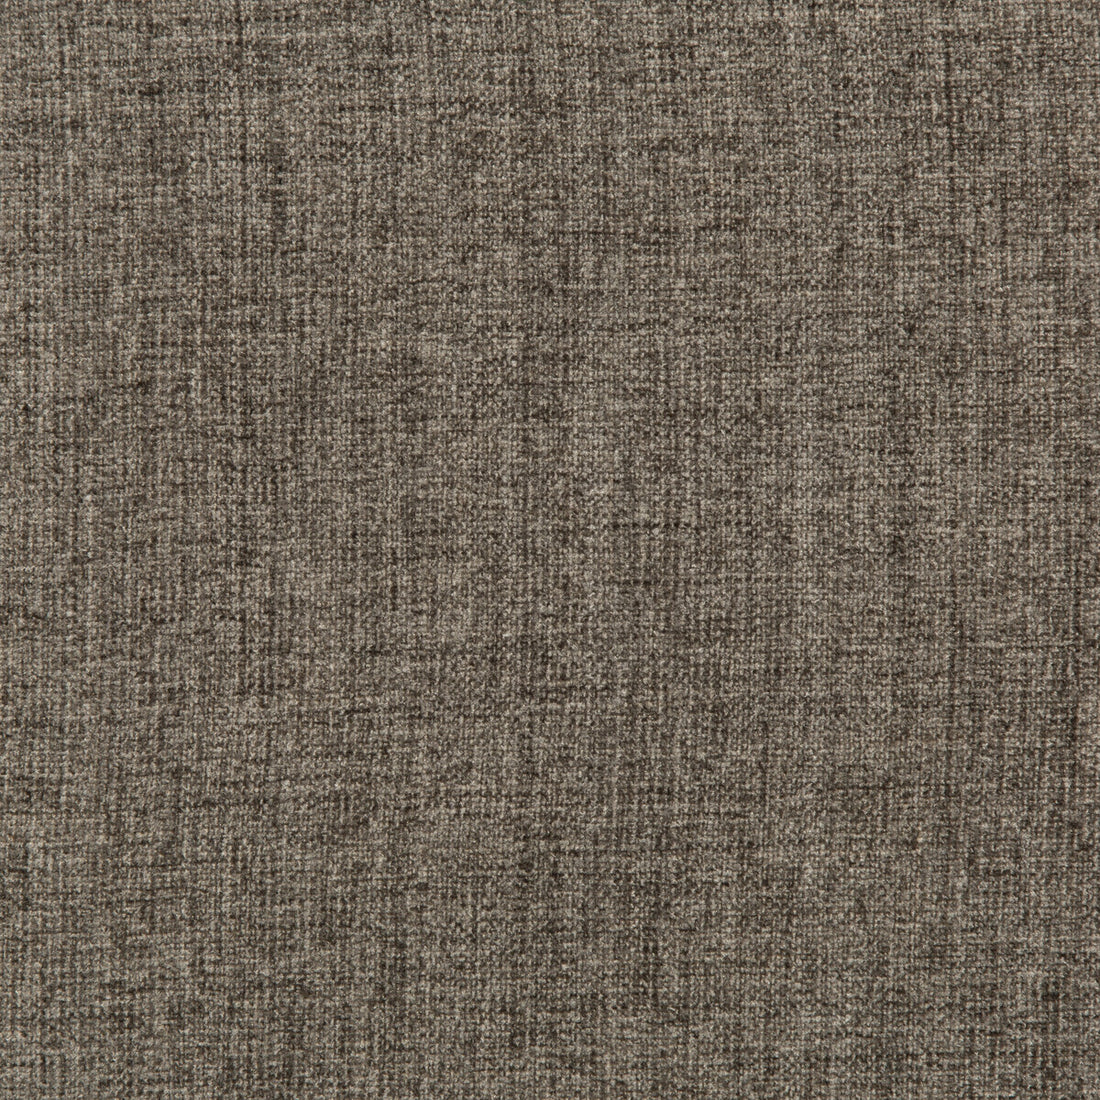 Kravet Basics fabric in 35775-21 color - pattern 35775.21.0 - by Kravet Basics